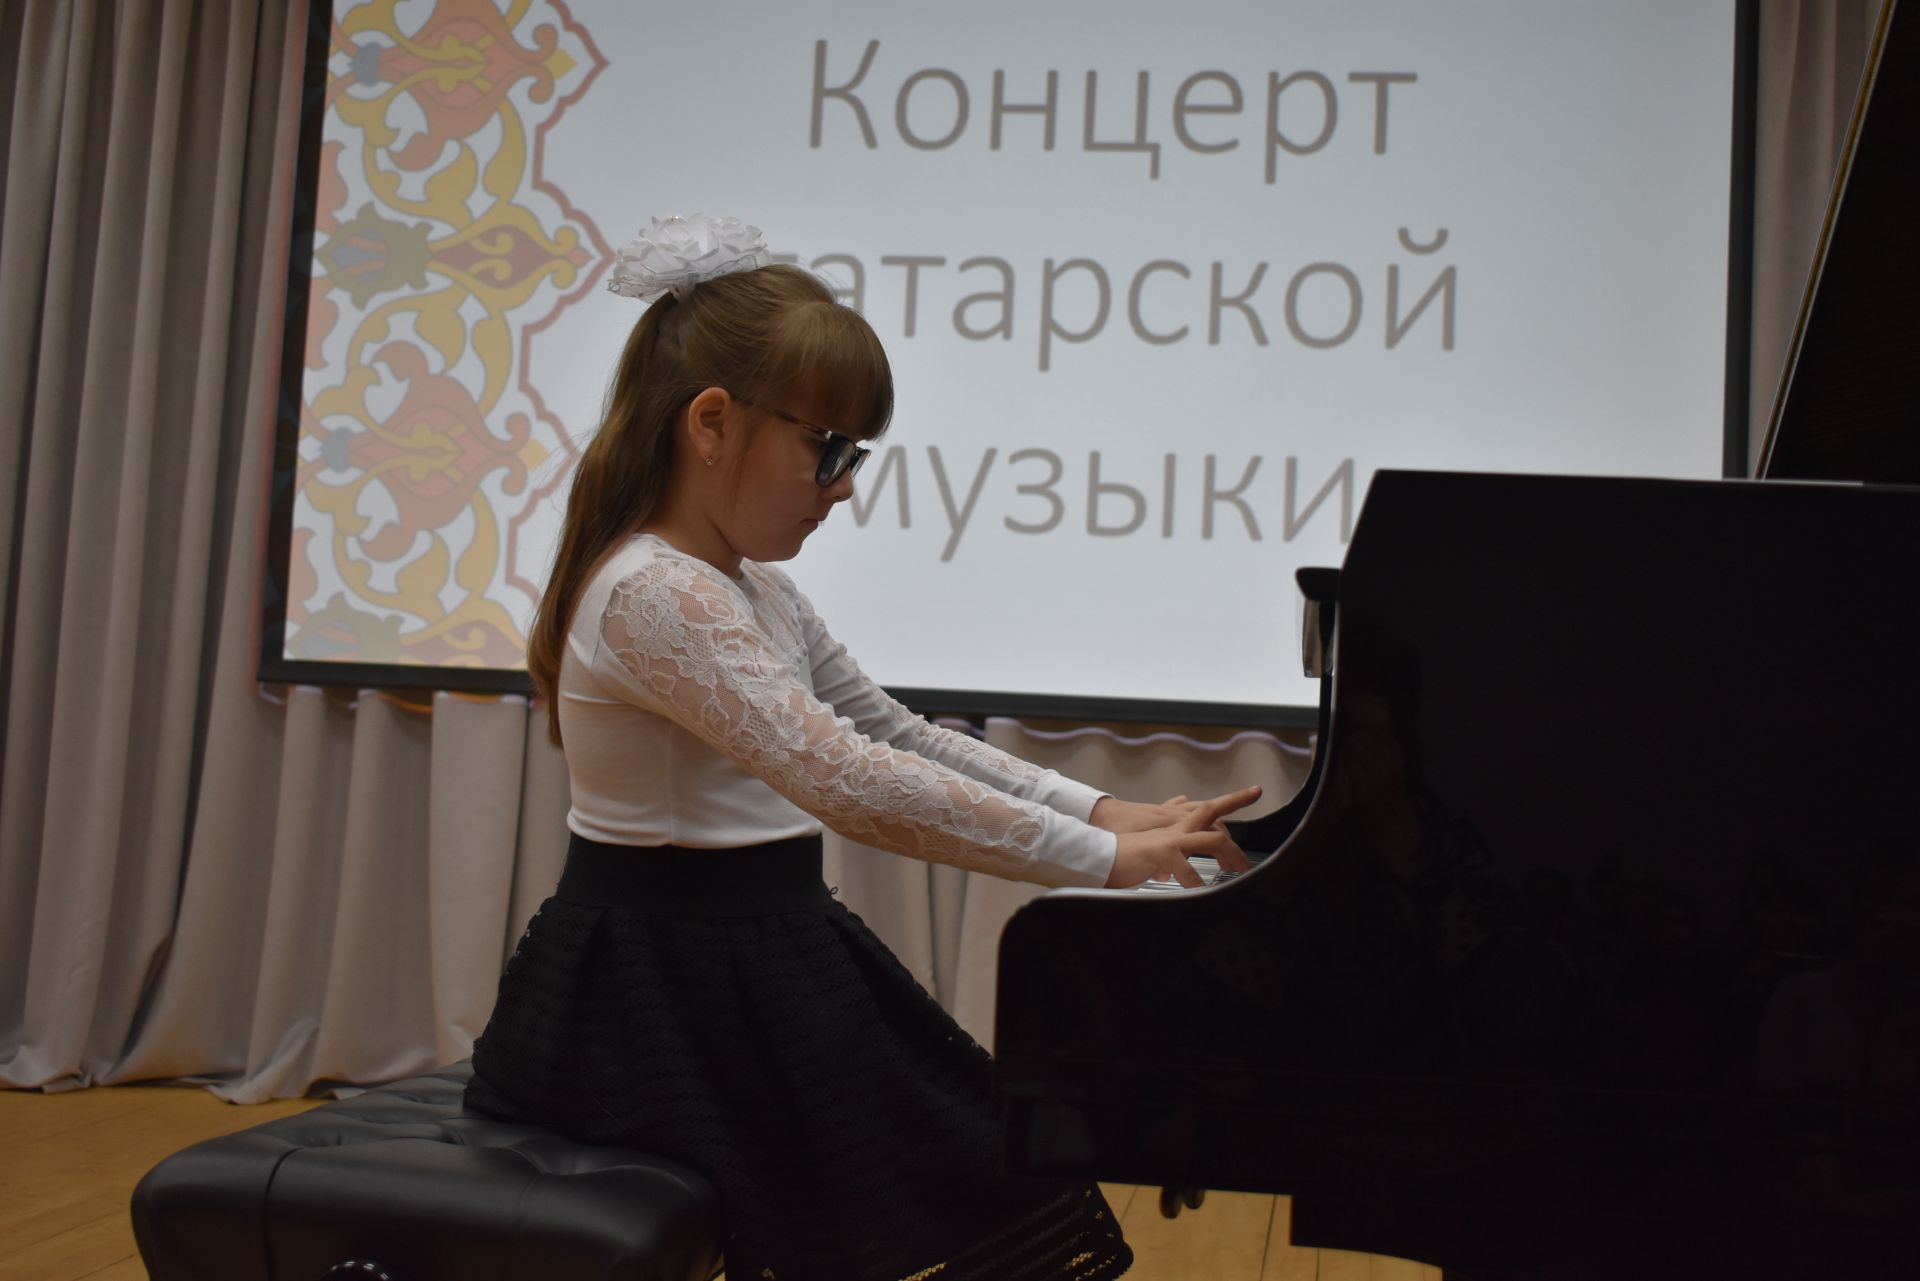 Концерт татарской музыки прошел в ДШИ (Фоторепортаж)